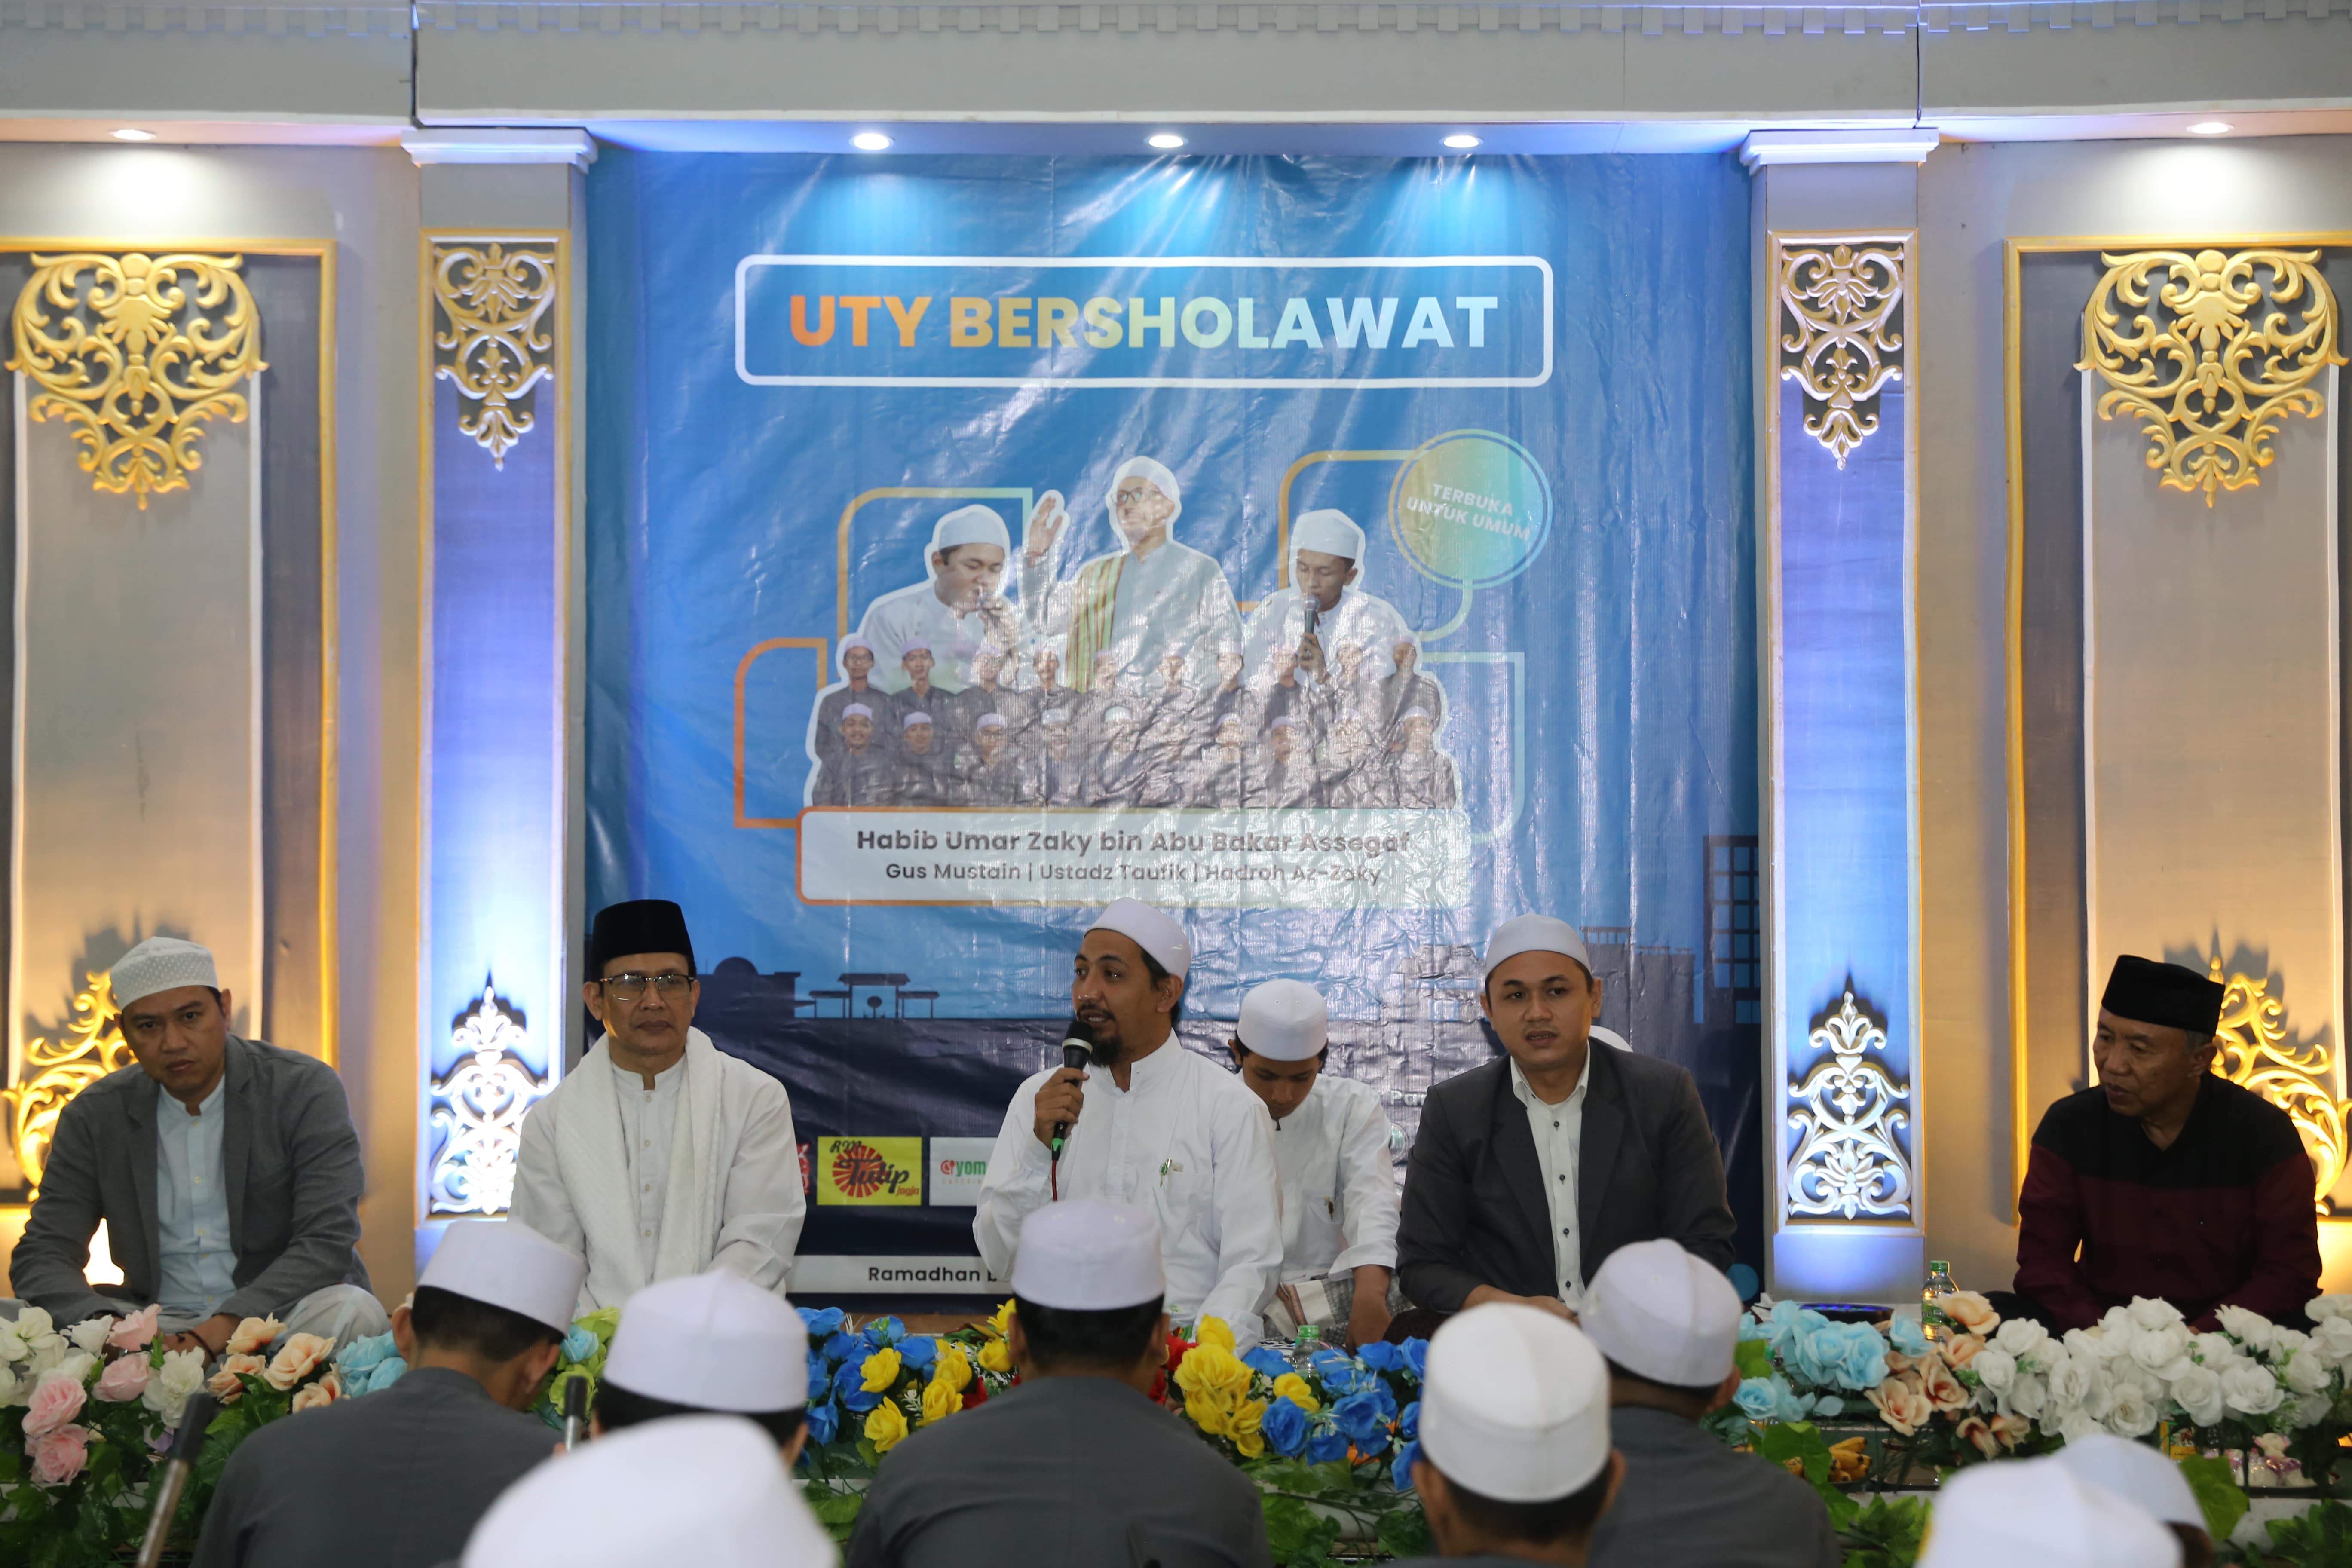 UKM Ikatan Mahasiswa Islam UTY Gelar Sholawat Bersama di Kampus 1 UTY